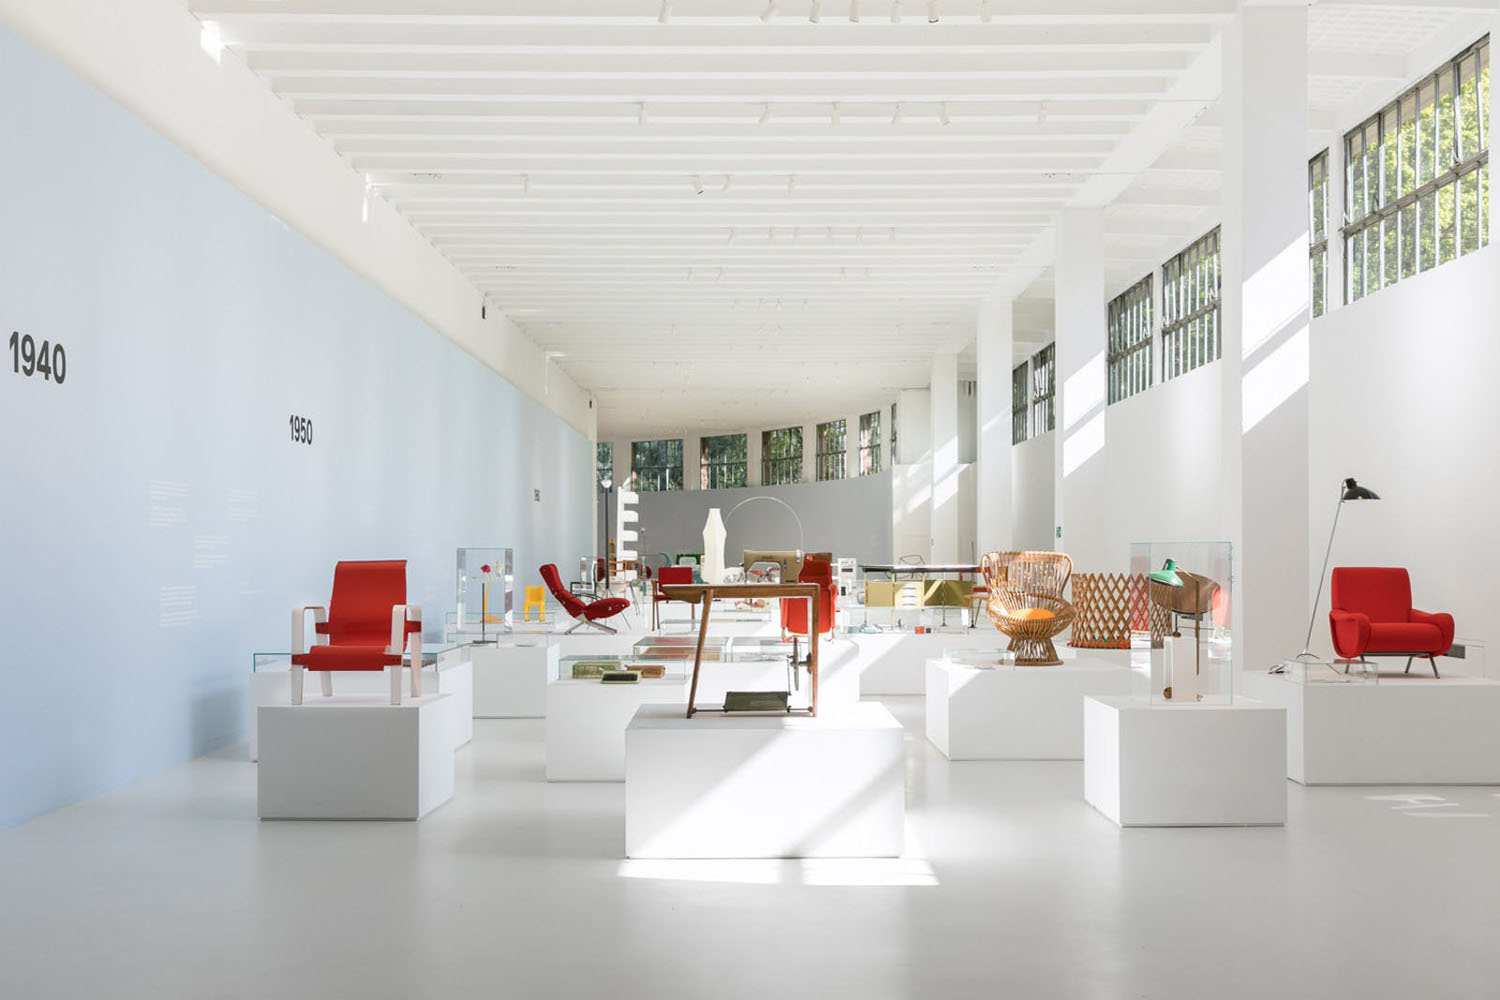 Milano – Museo permanente del Design – Progetto di ampliamento ipogeo per la realizzazione del Museo permanente del Design italiano